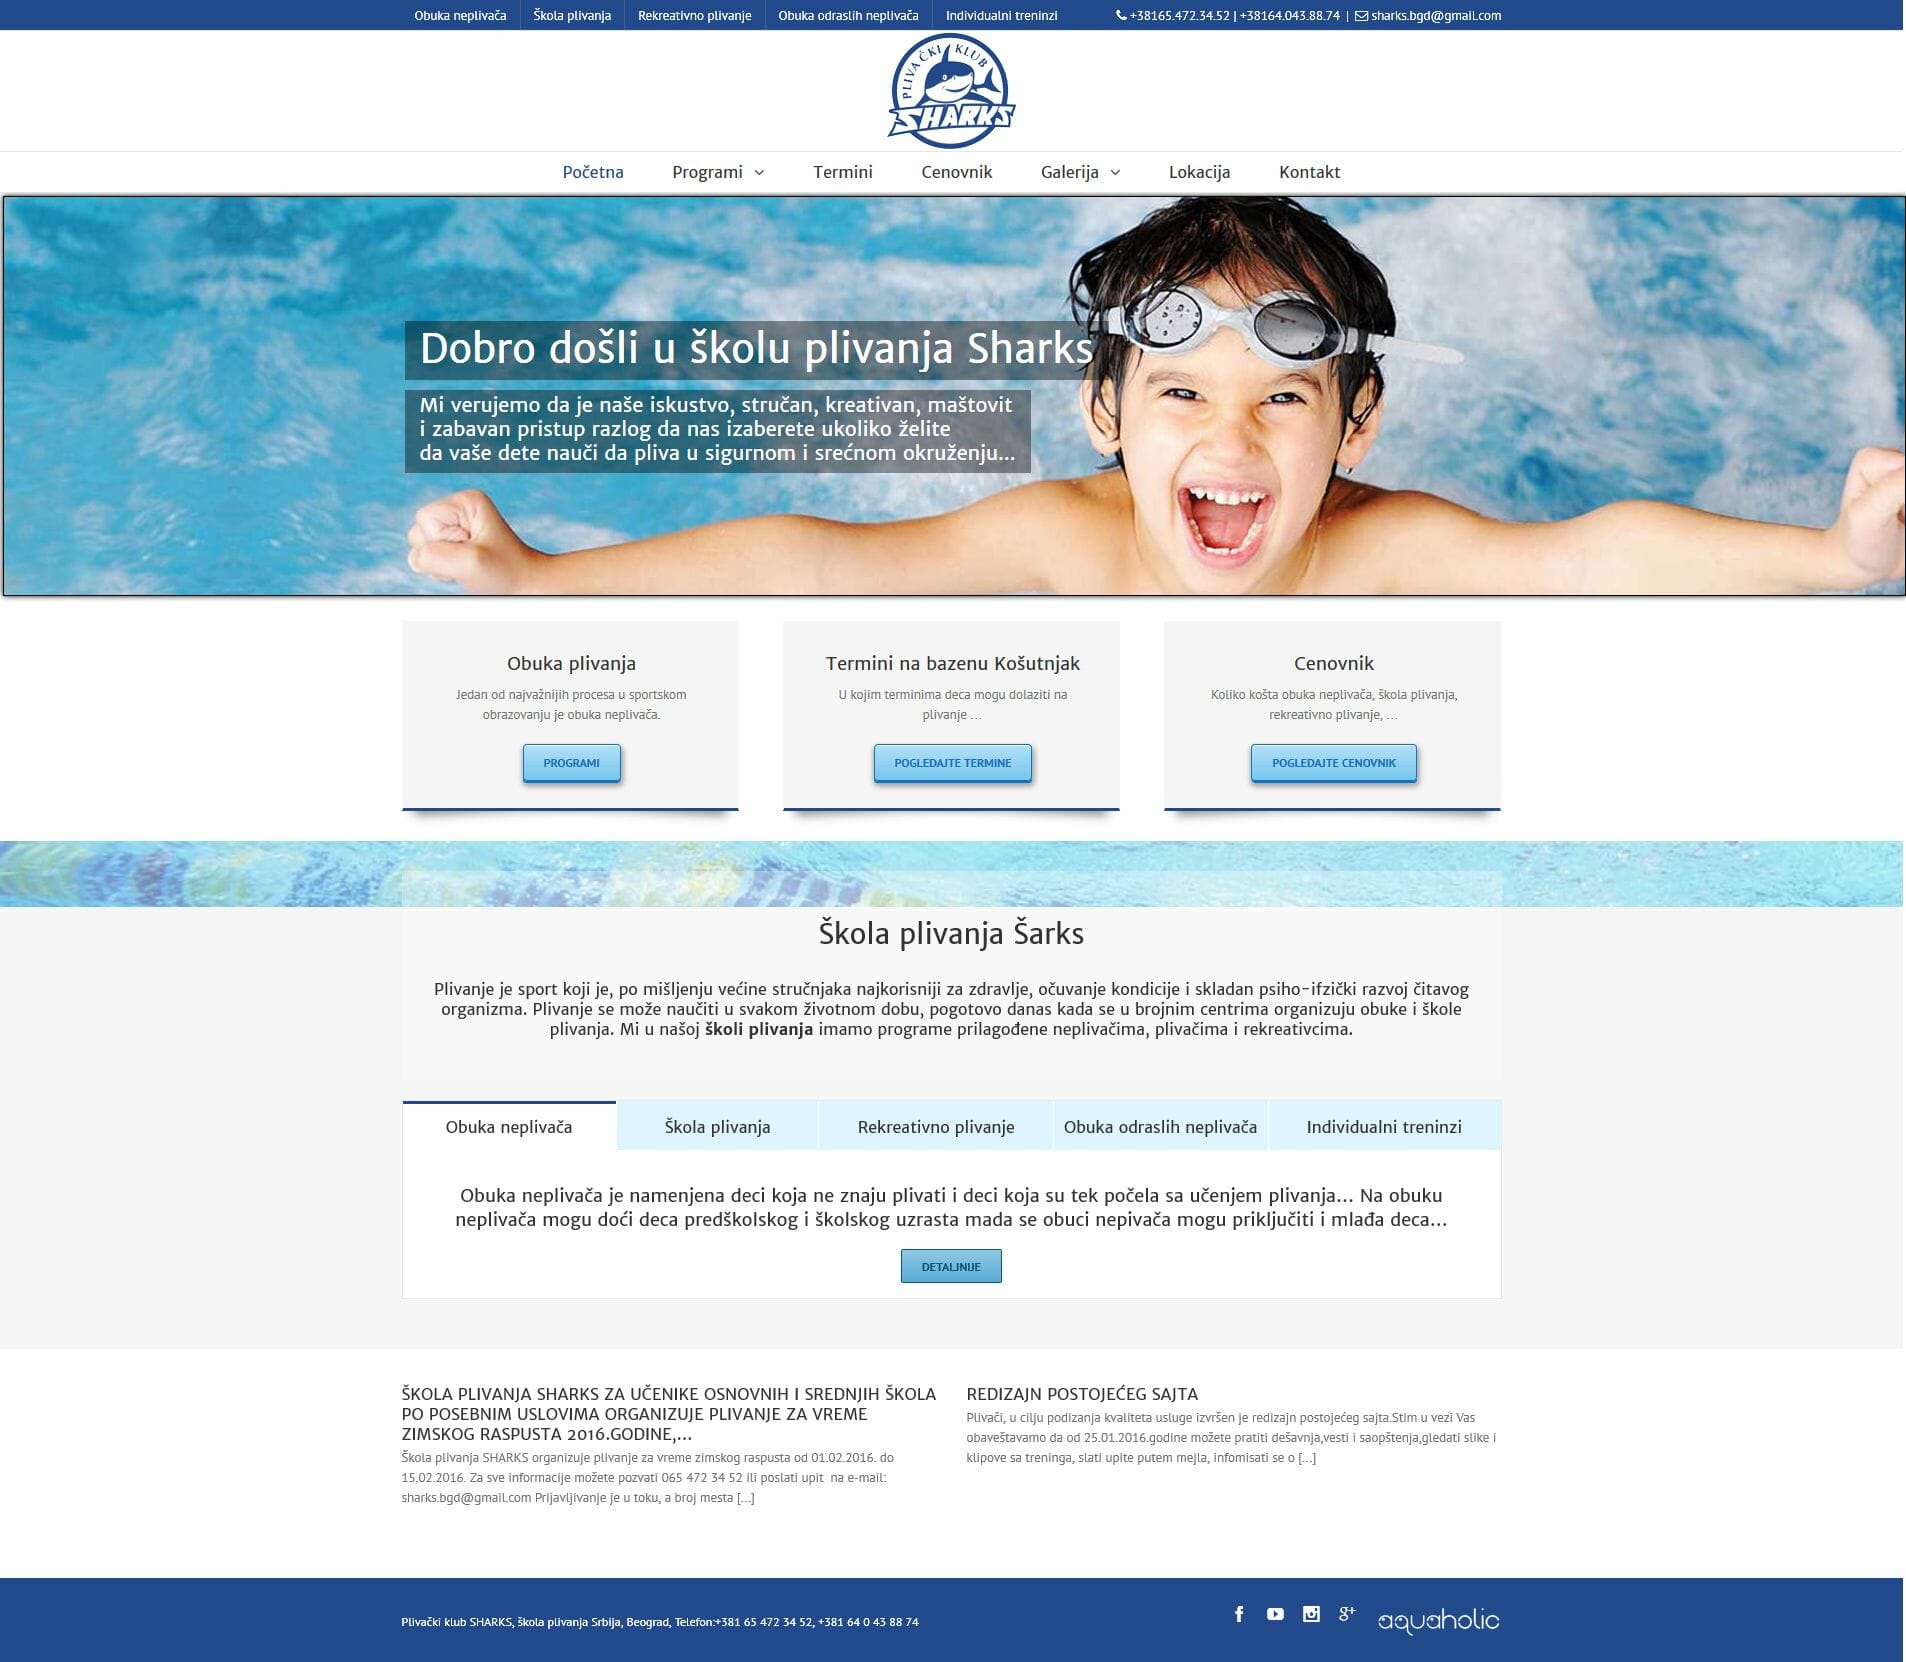 izrada sajta za skolu plivanja